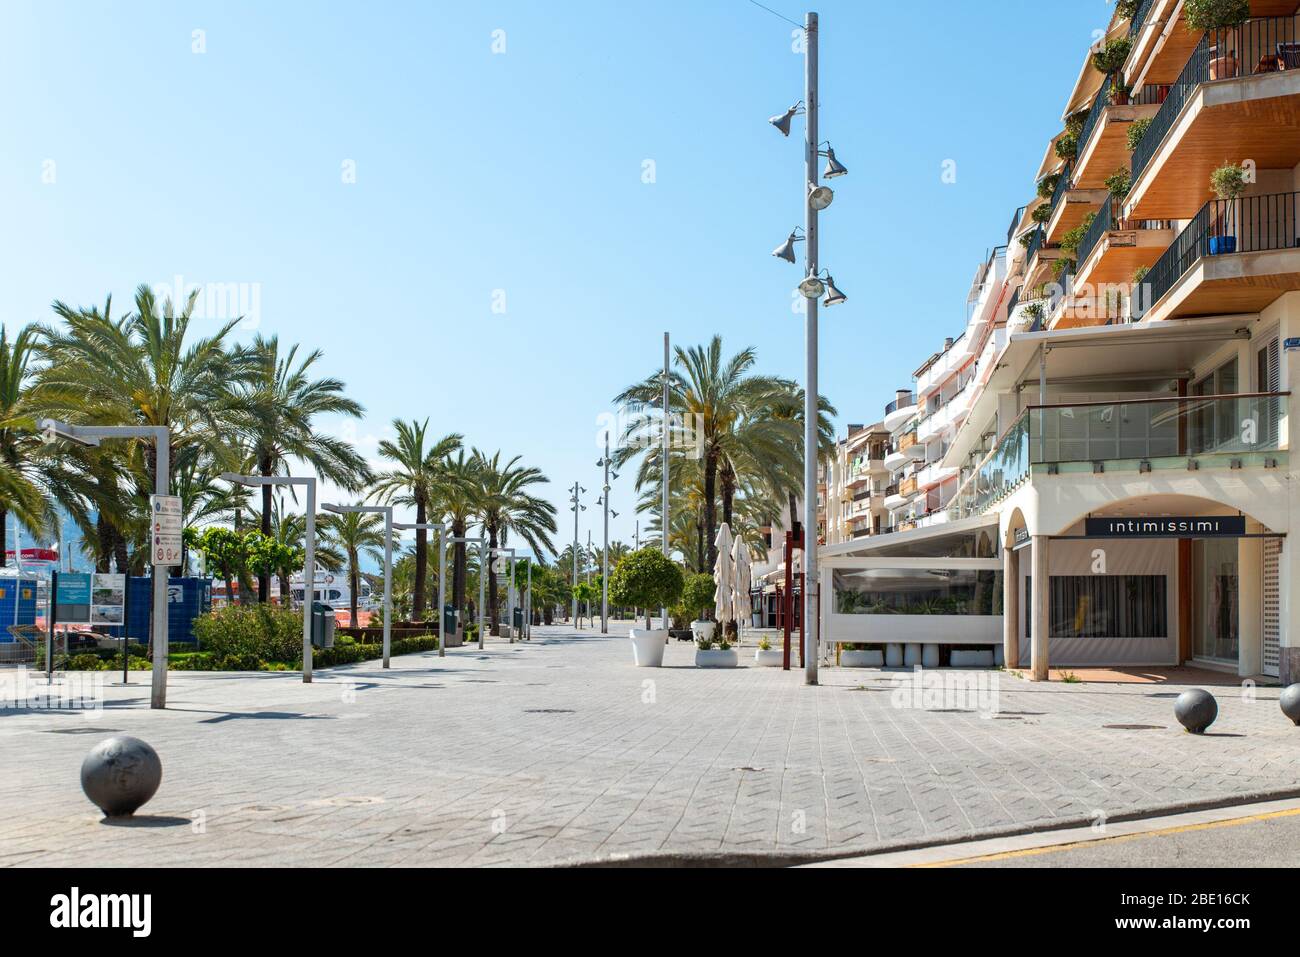 PALMA DE MALLORCA, SPAIN. APRIL 09 2020: Empty Streets in Port de